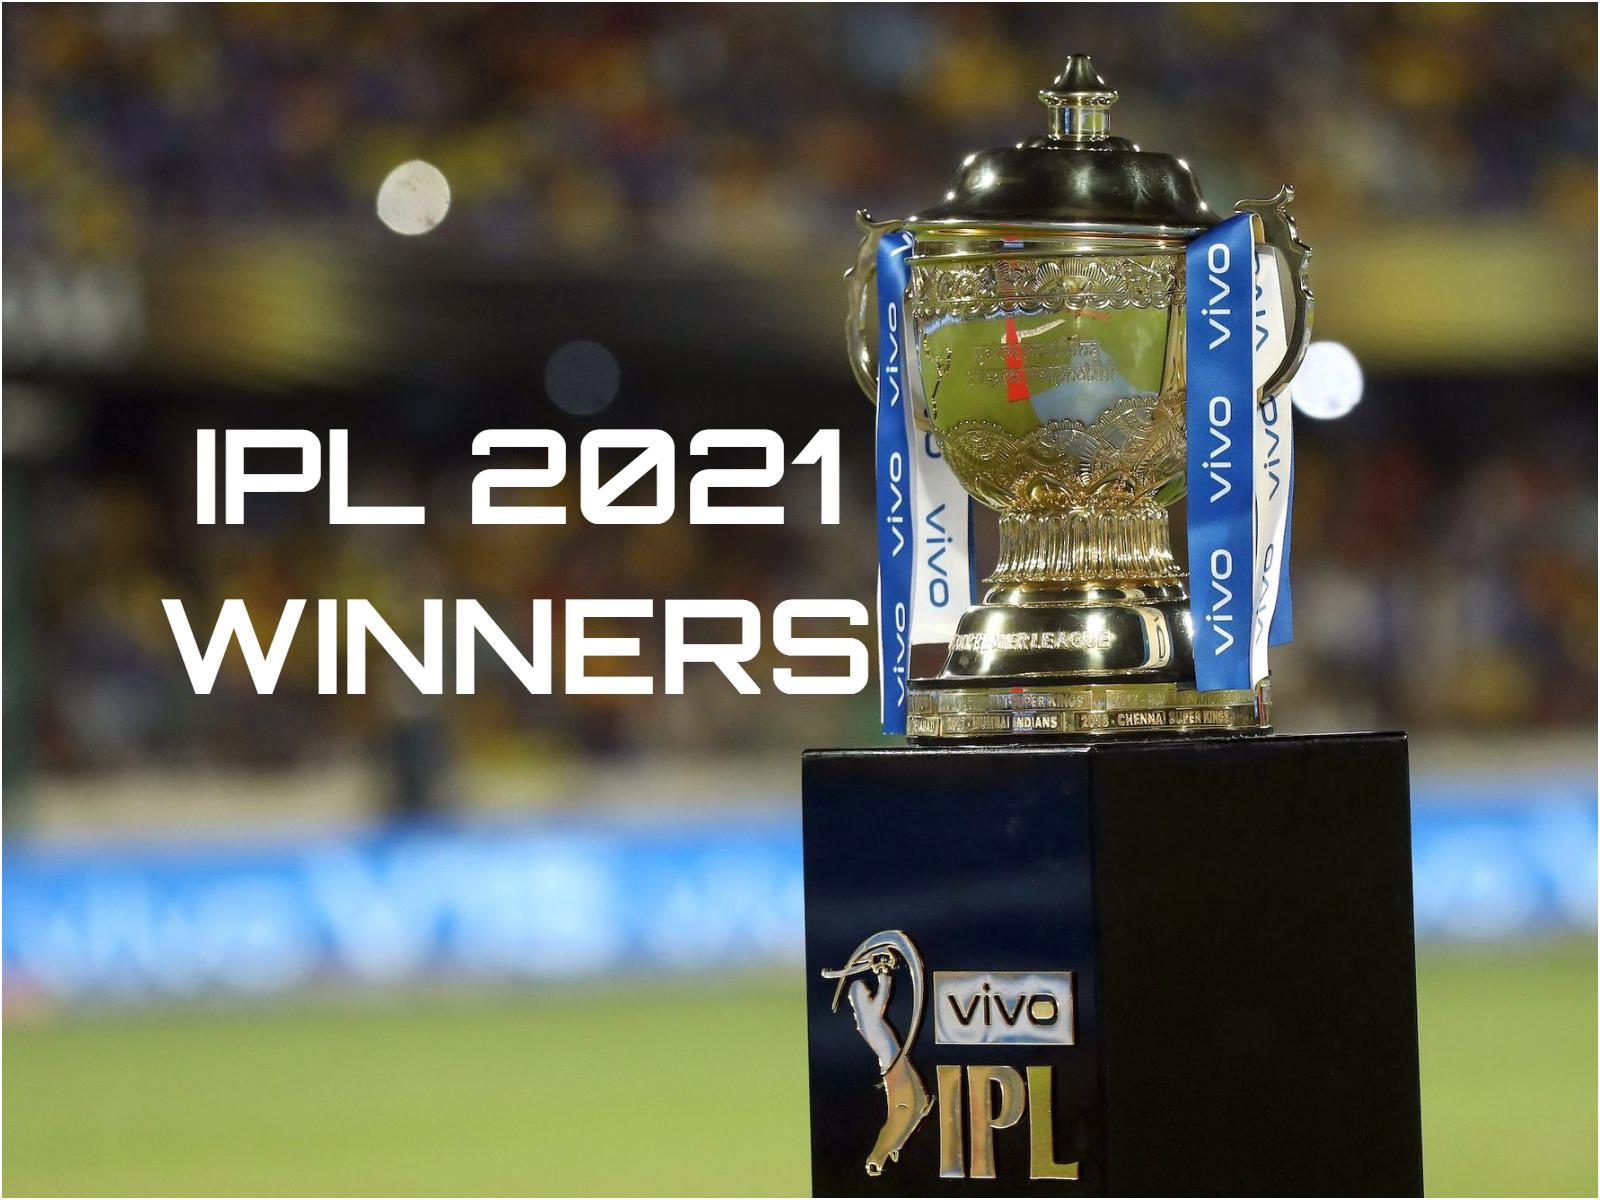 CSK won IPL 2021